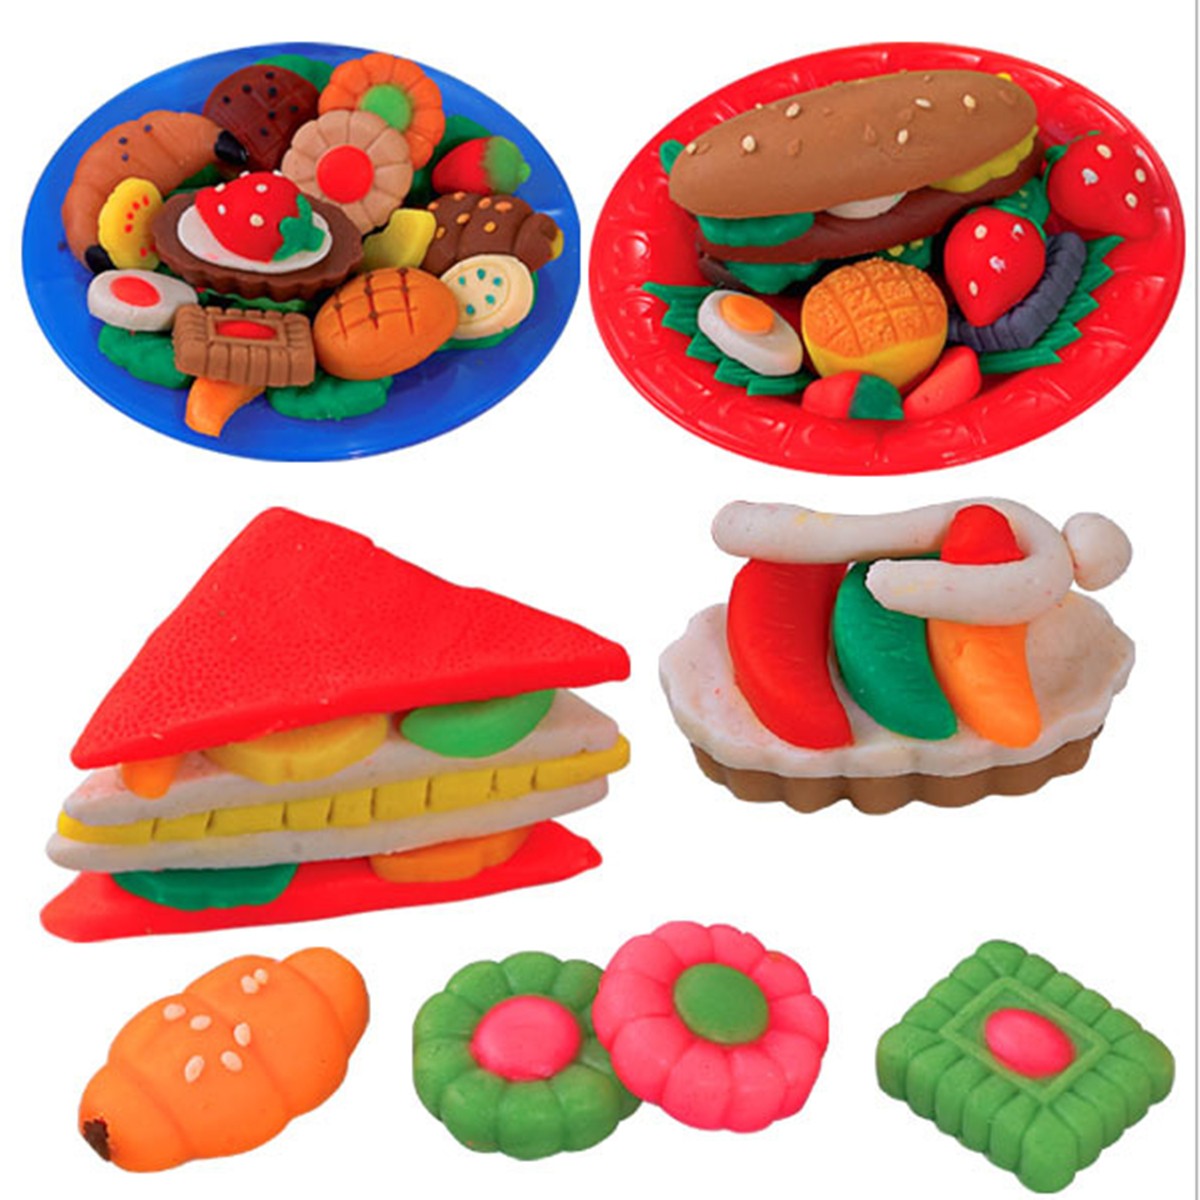 Продукты из пластилина. Еда из пластилина. Лепка сладости. Игрушки из пластилина для детей. Еда из пластилина для детей.